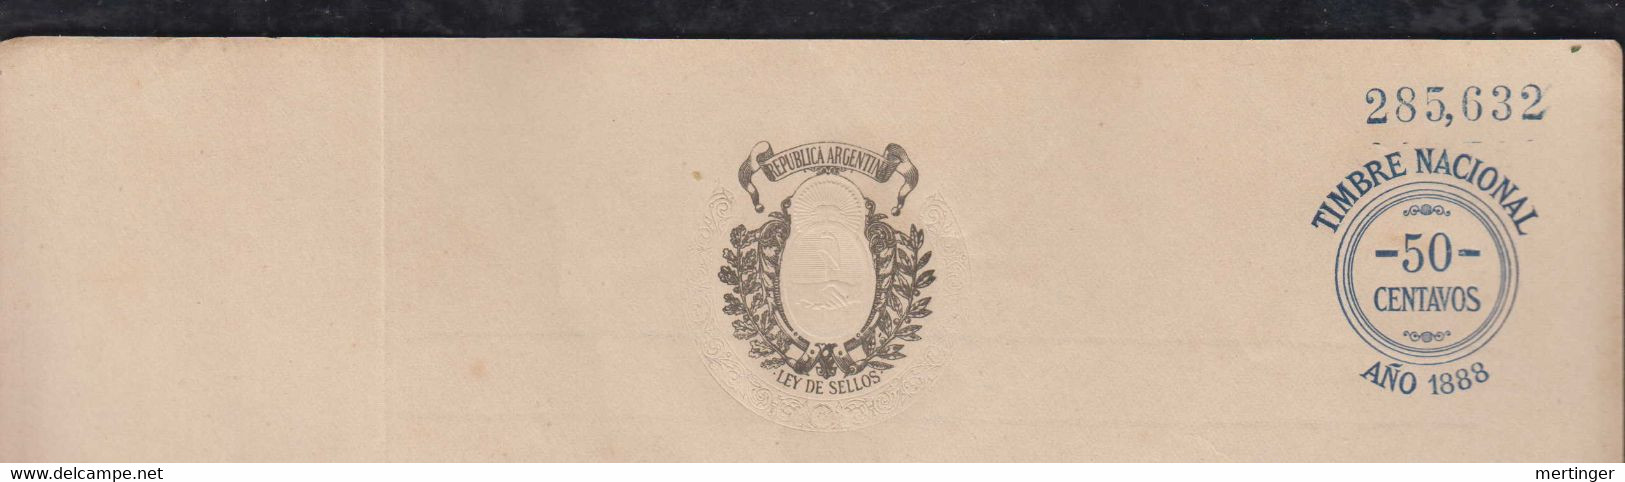 Argentina 1888 Revenue Fiscal Document Stationery Mint TIMBRE NACIONAL 50 Centavos - Briefe U. Dokumente